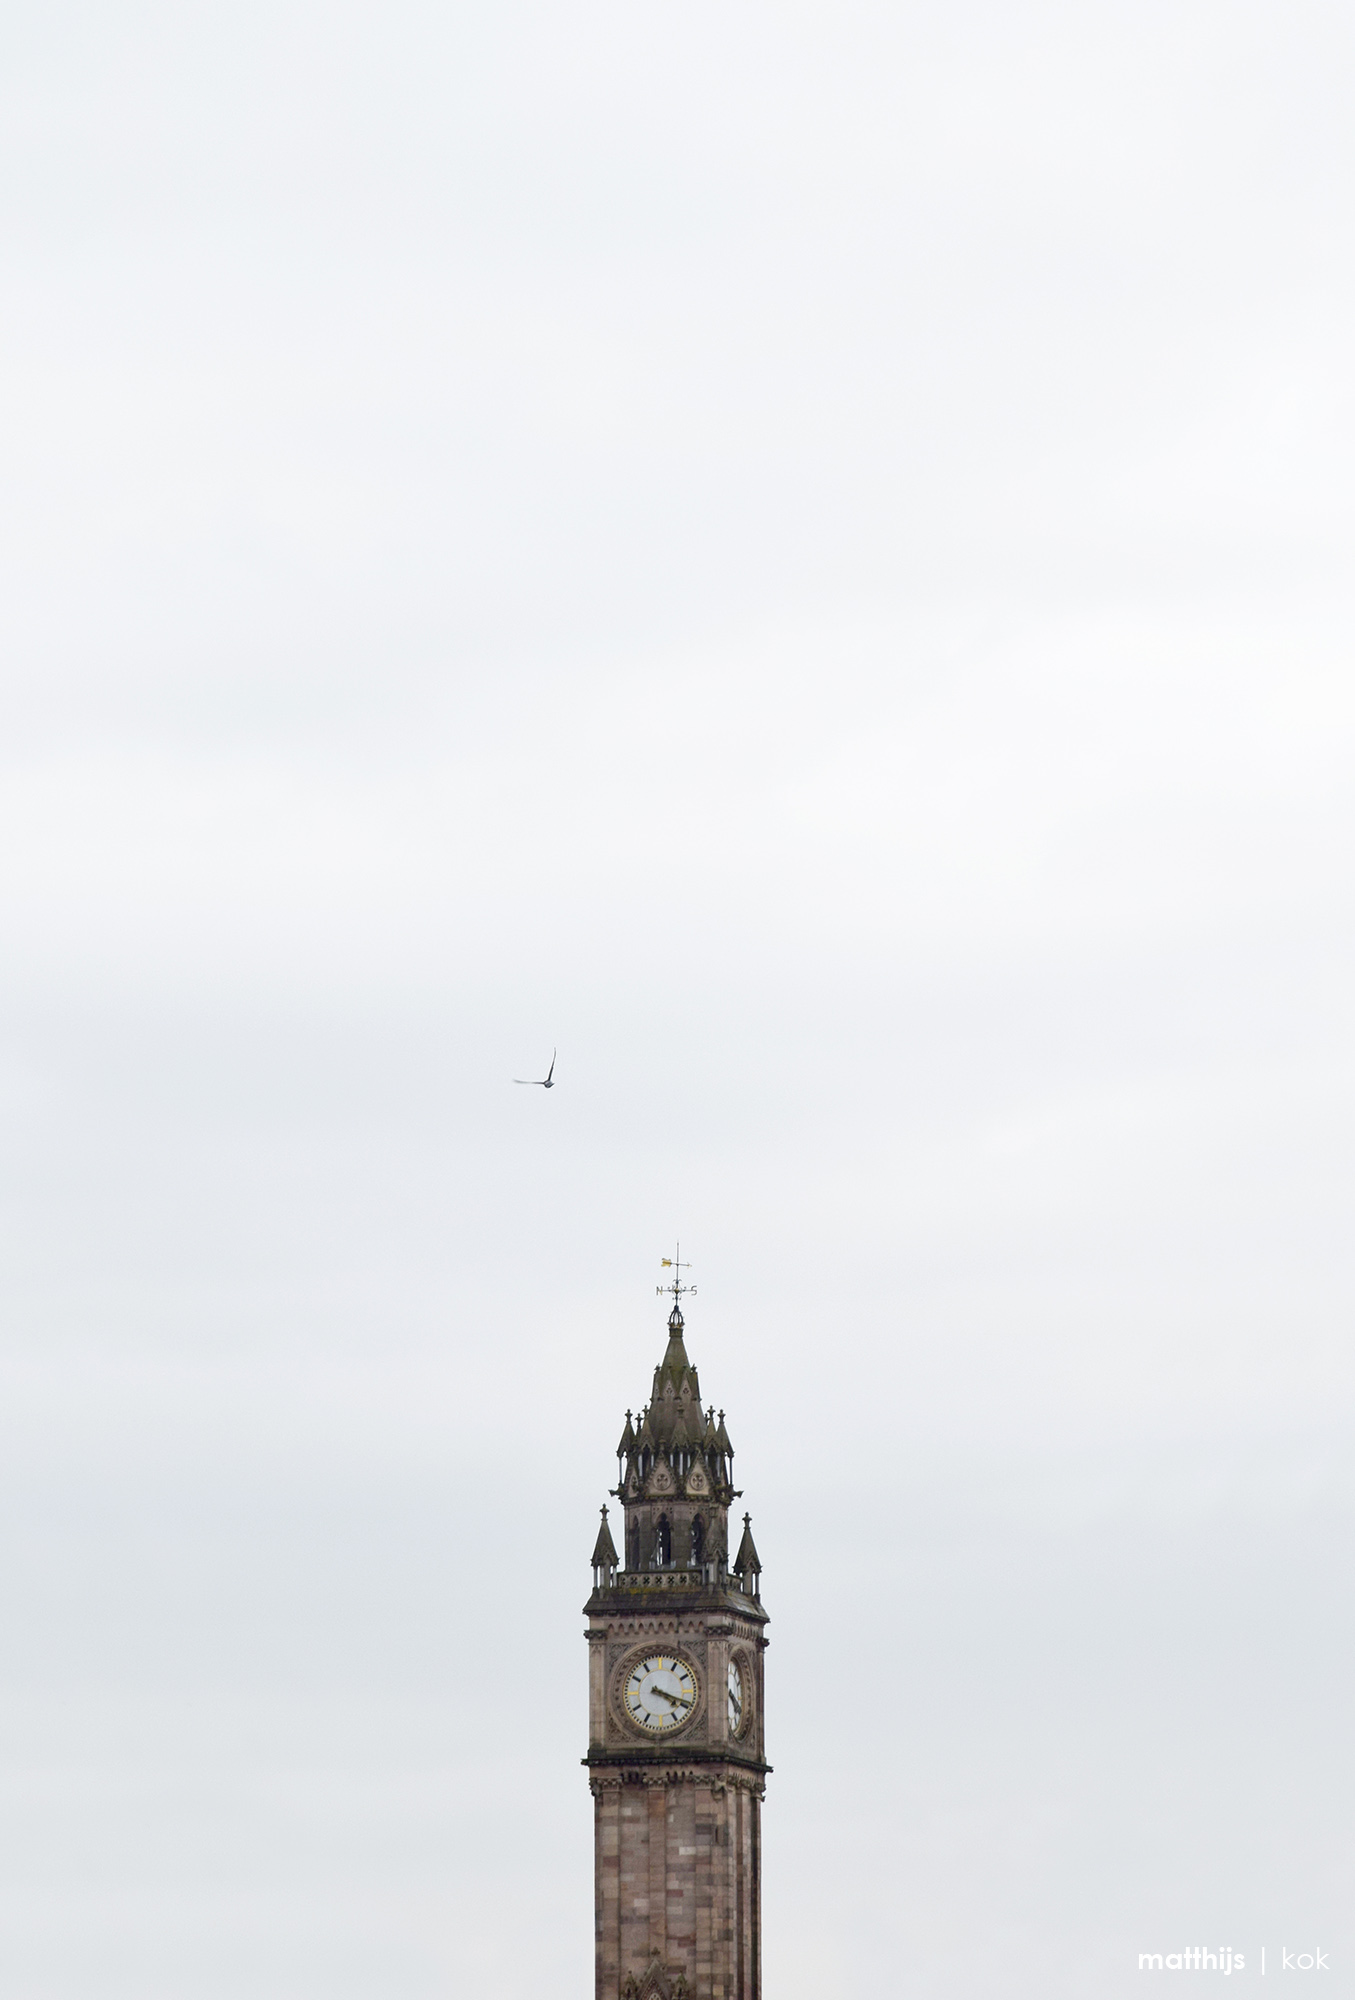 Albert Memorial Clock, Belfast, Northern Ireland | Photo by Matthijs Kok